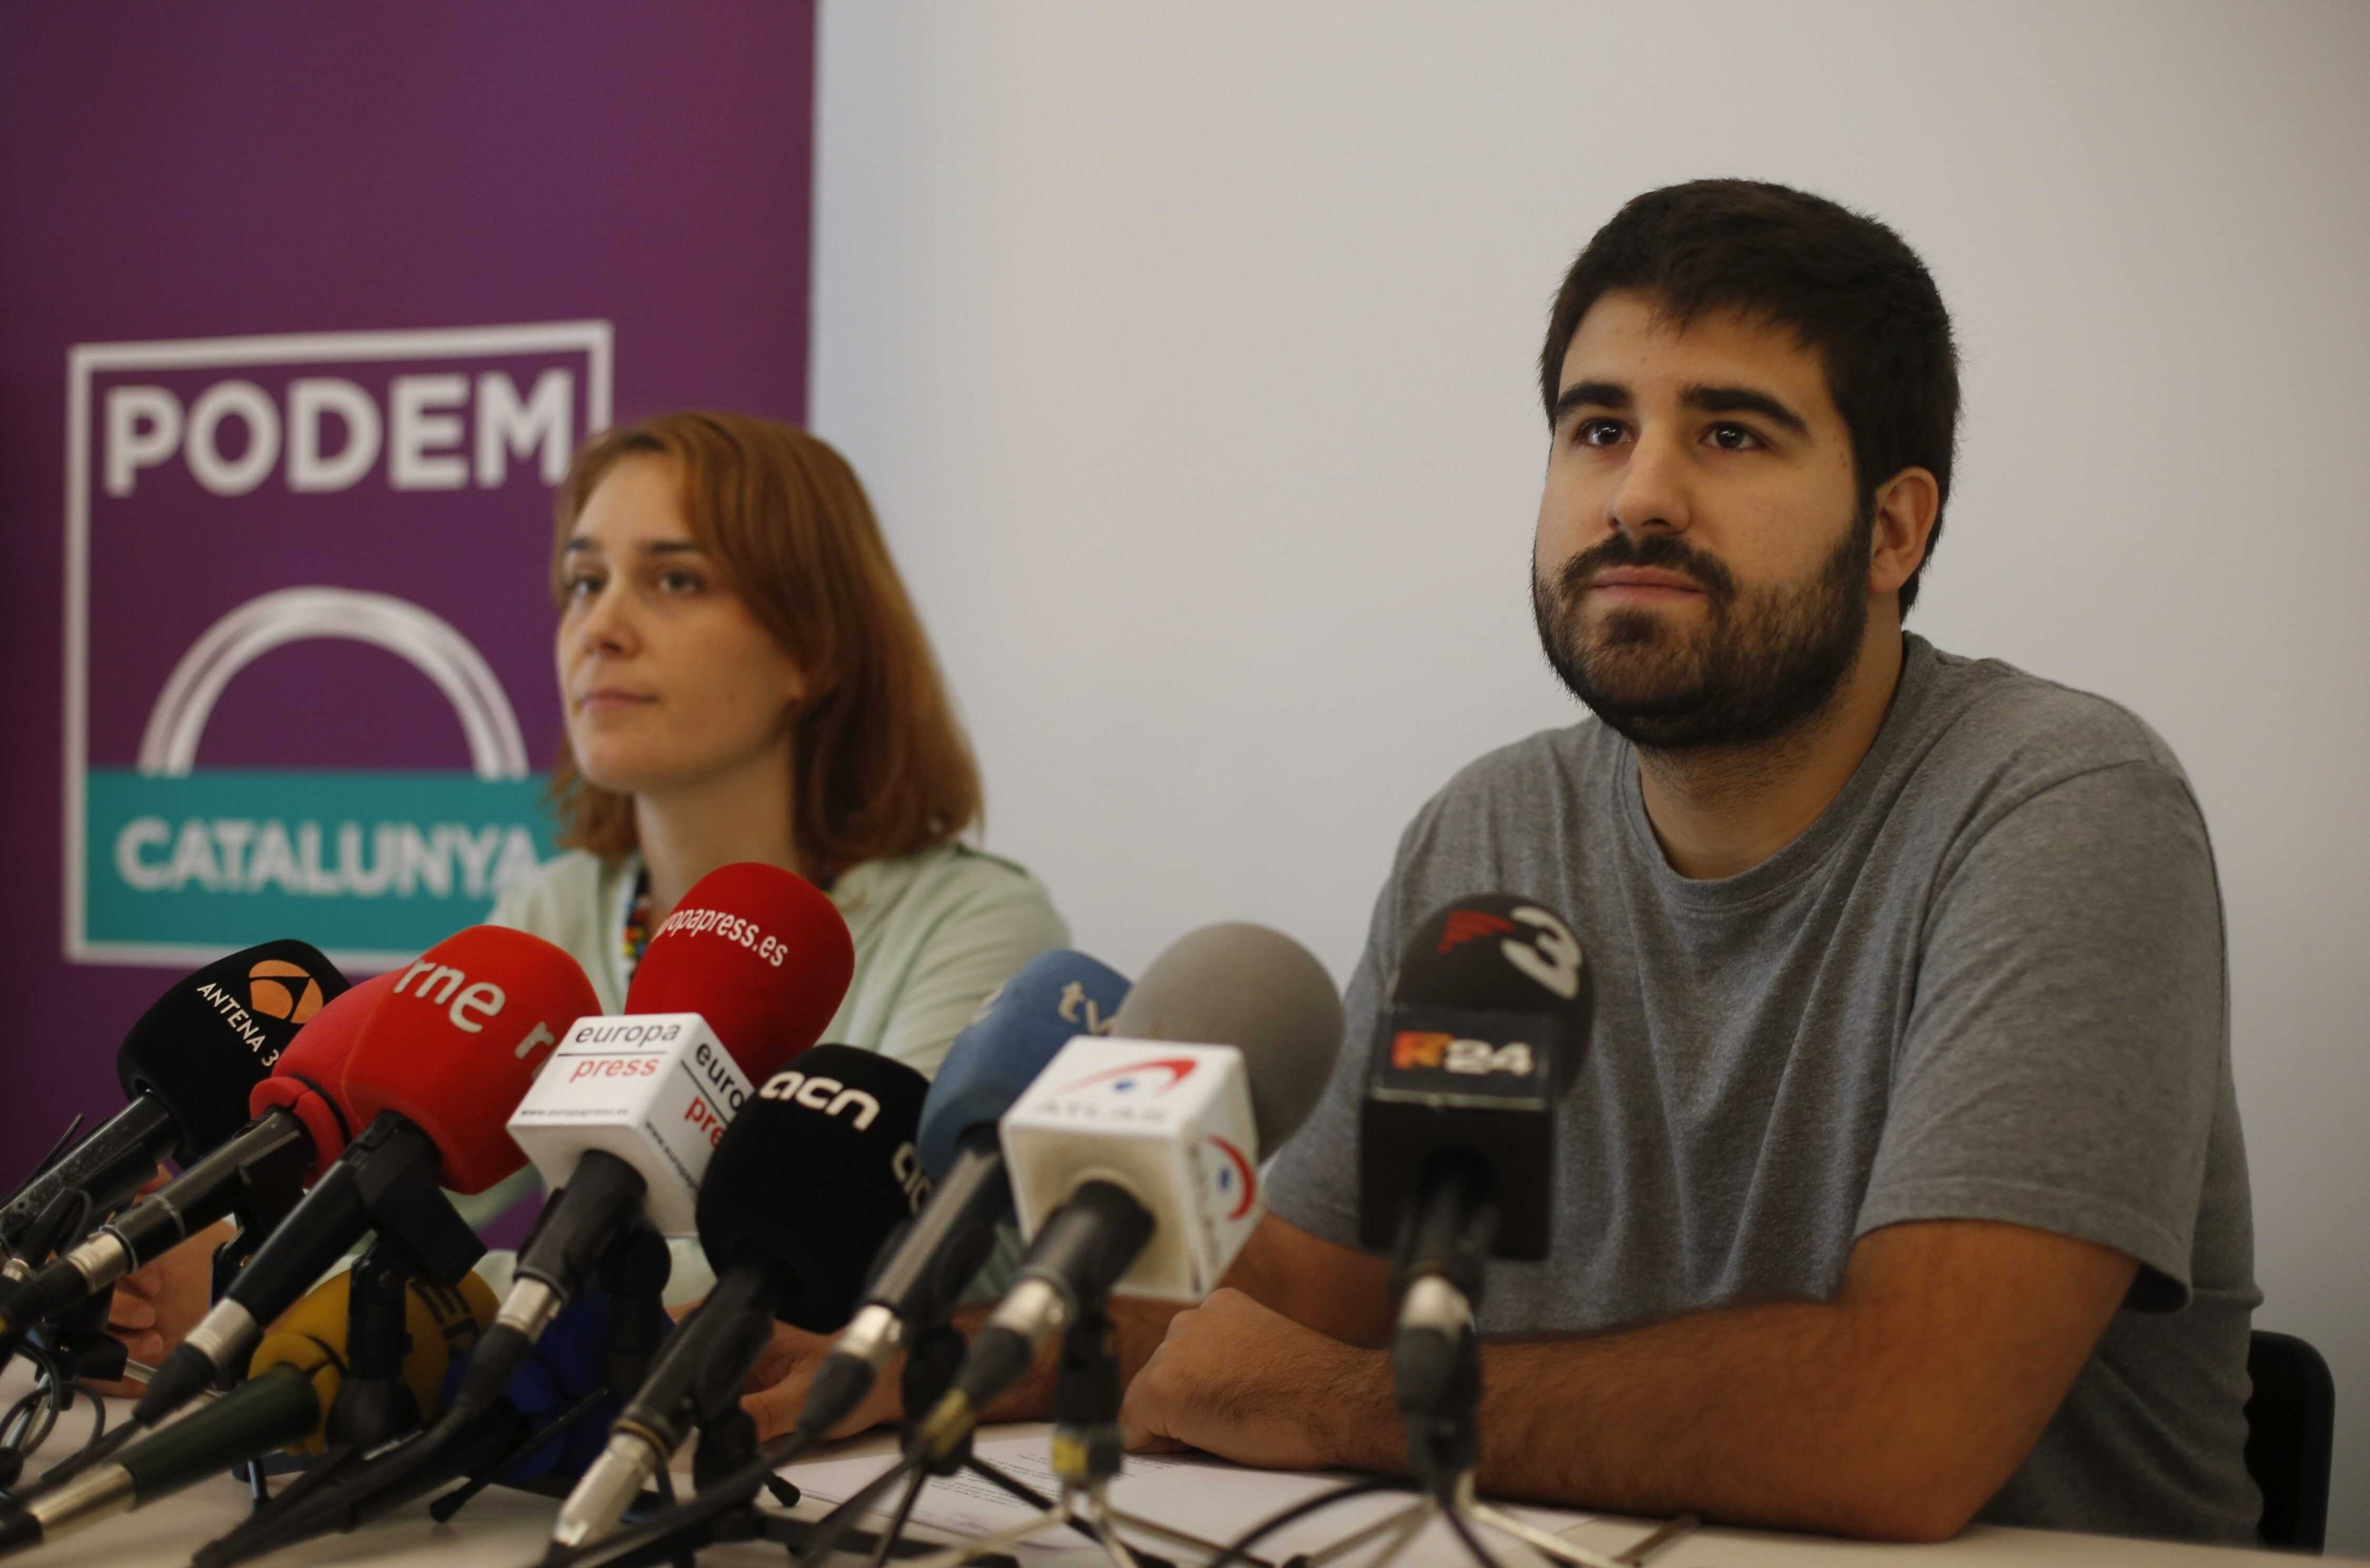 Guerra oberta entre faccions pel lideratge de Podem a Catalunya